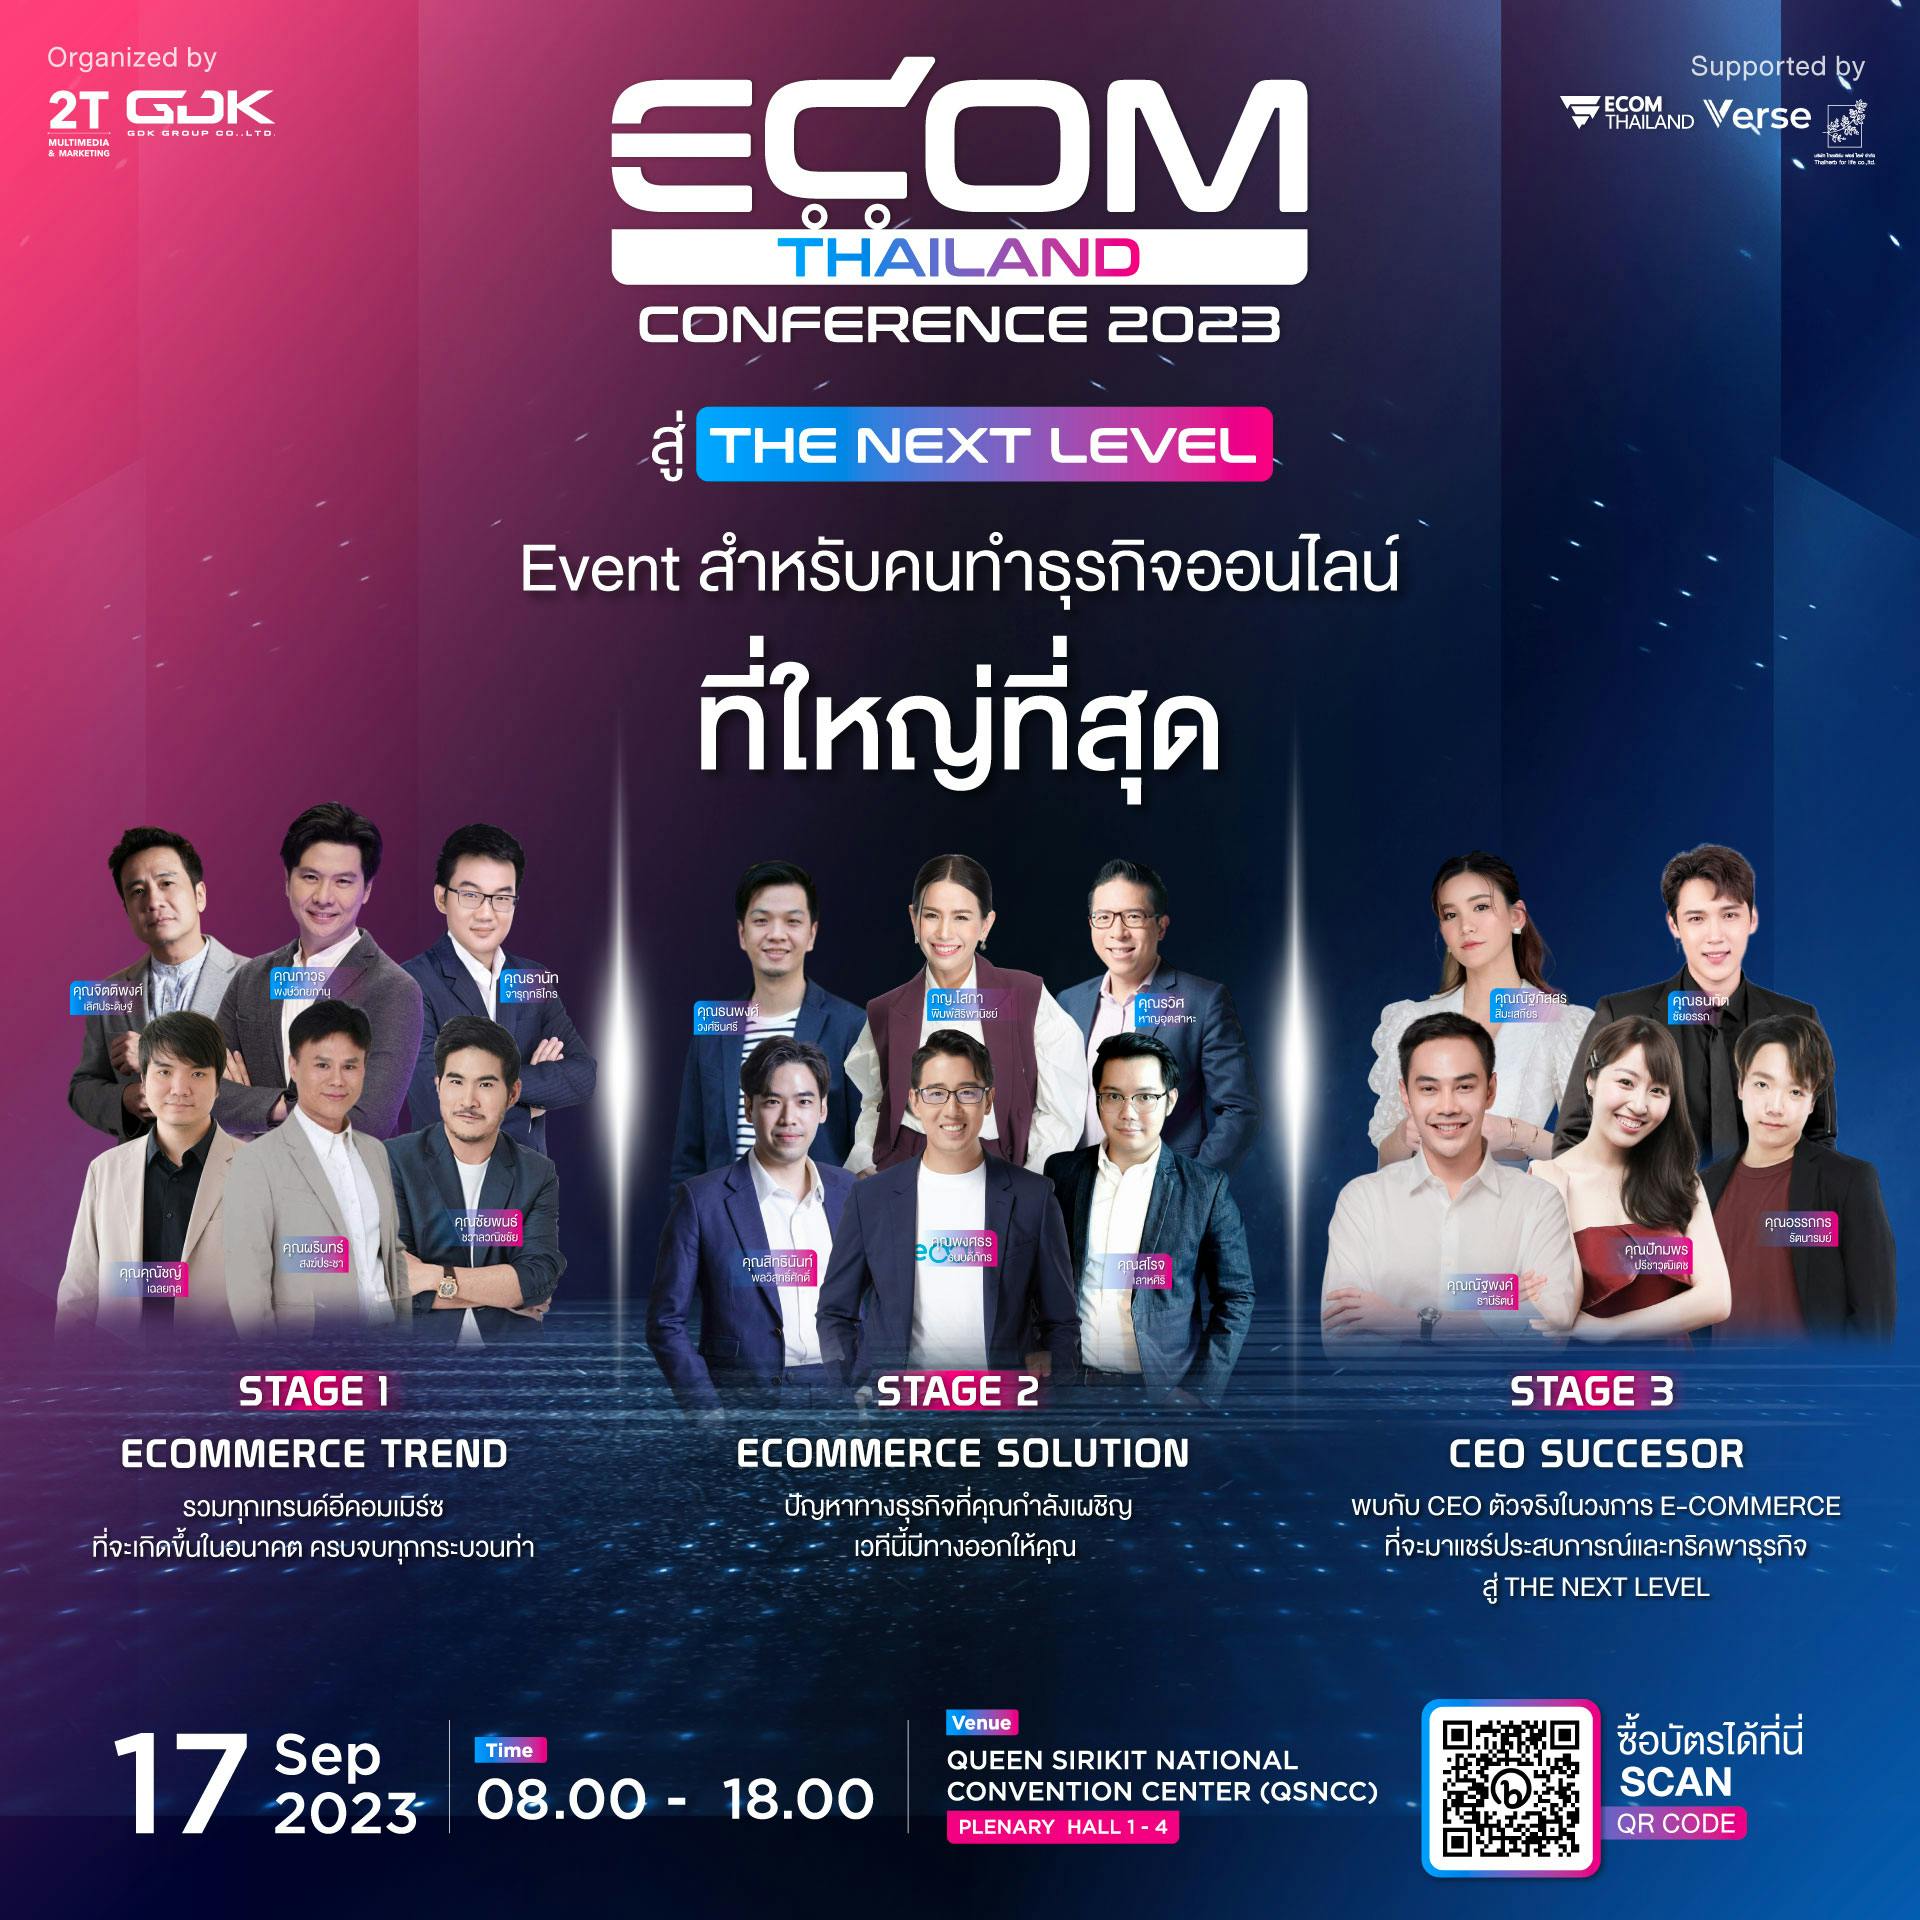 Ecom Thailand Conference 2023